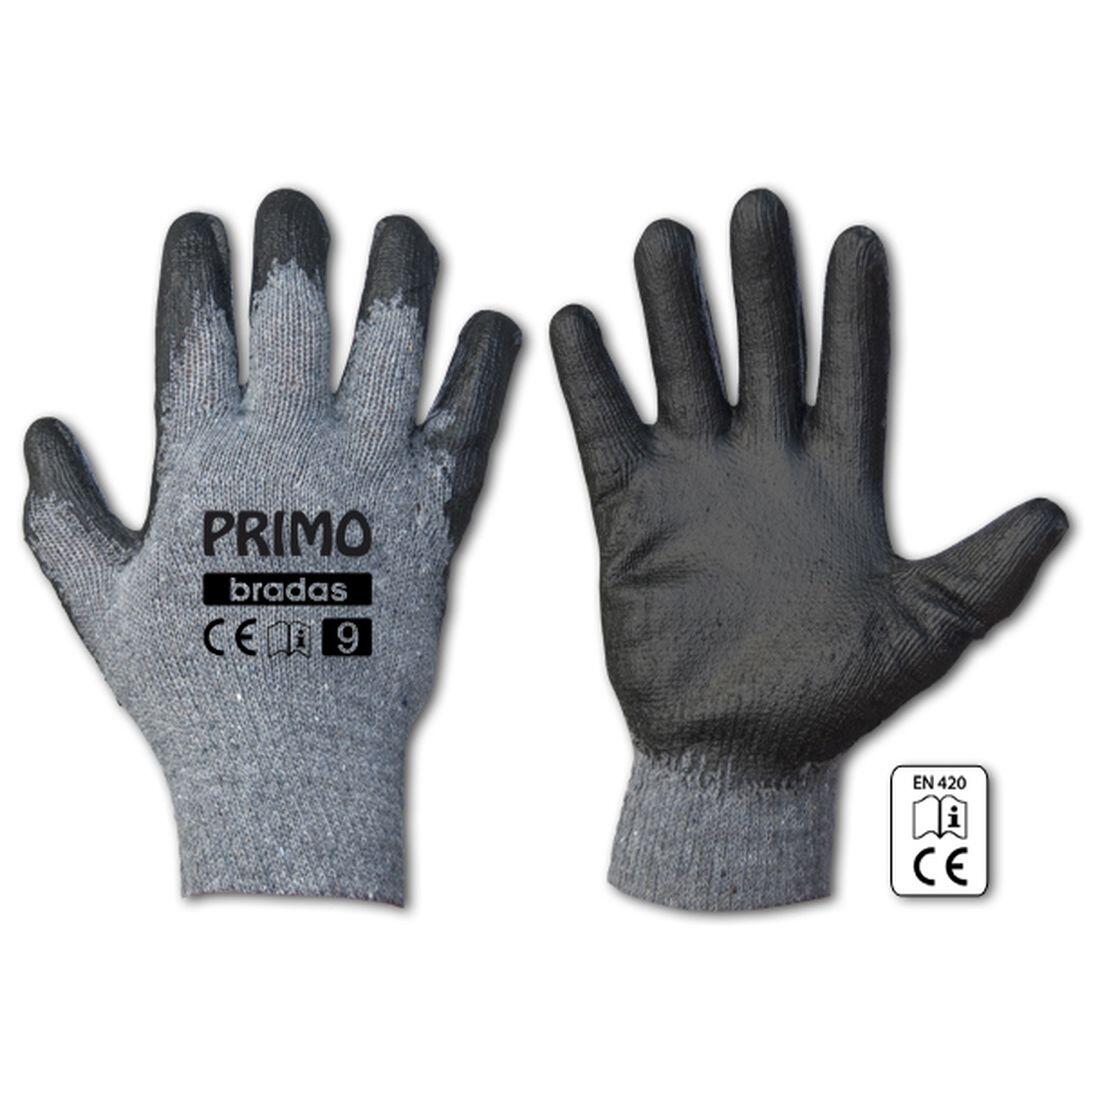 rukavice PRIMO latex  8 0.07 Kg MAXMIX Sklad14 715682 349